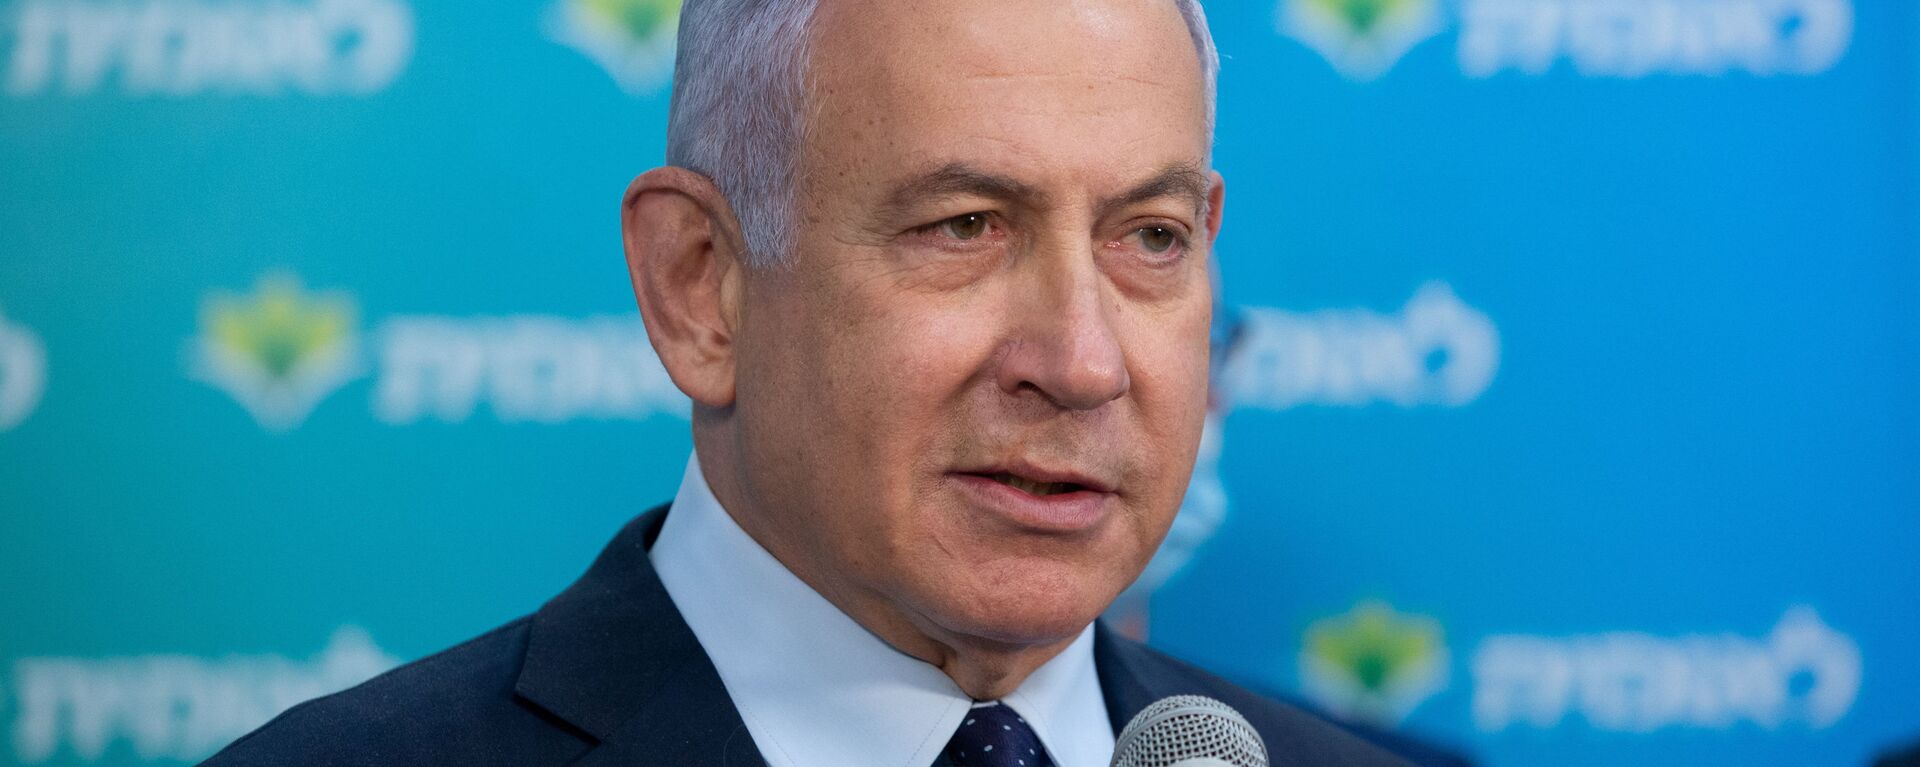 بنیامین نتانیاهو، نخست وزیر سابق اسرائیل - اسپوتنیک ایران  , 1920, 11.12.2021